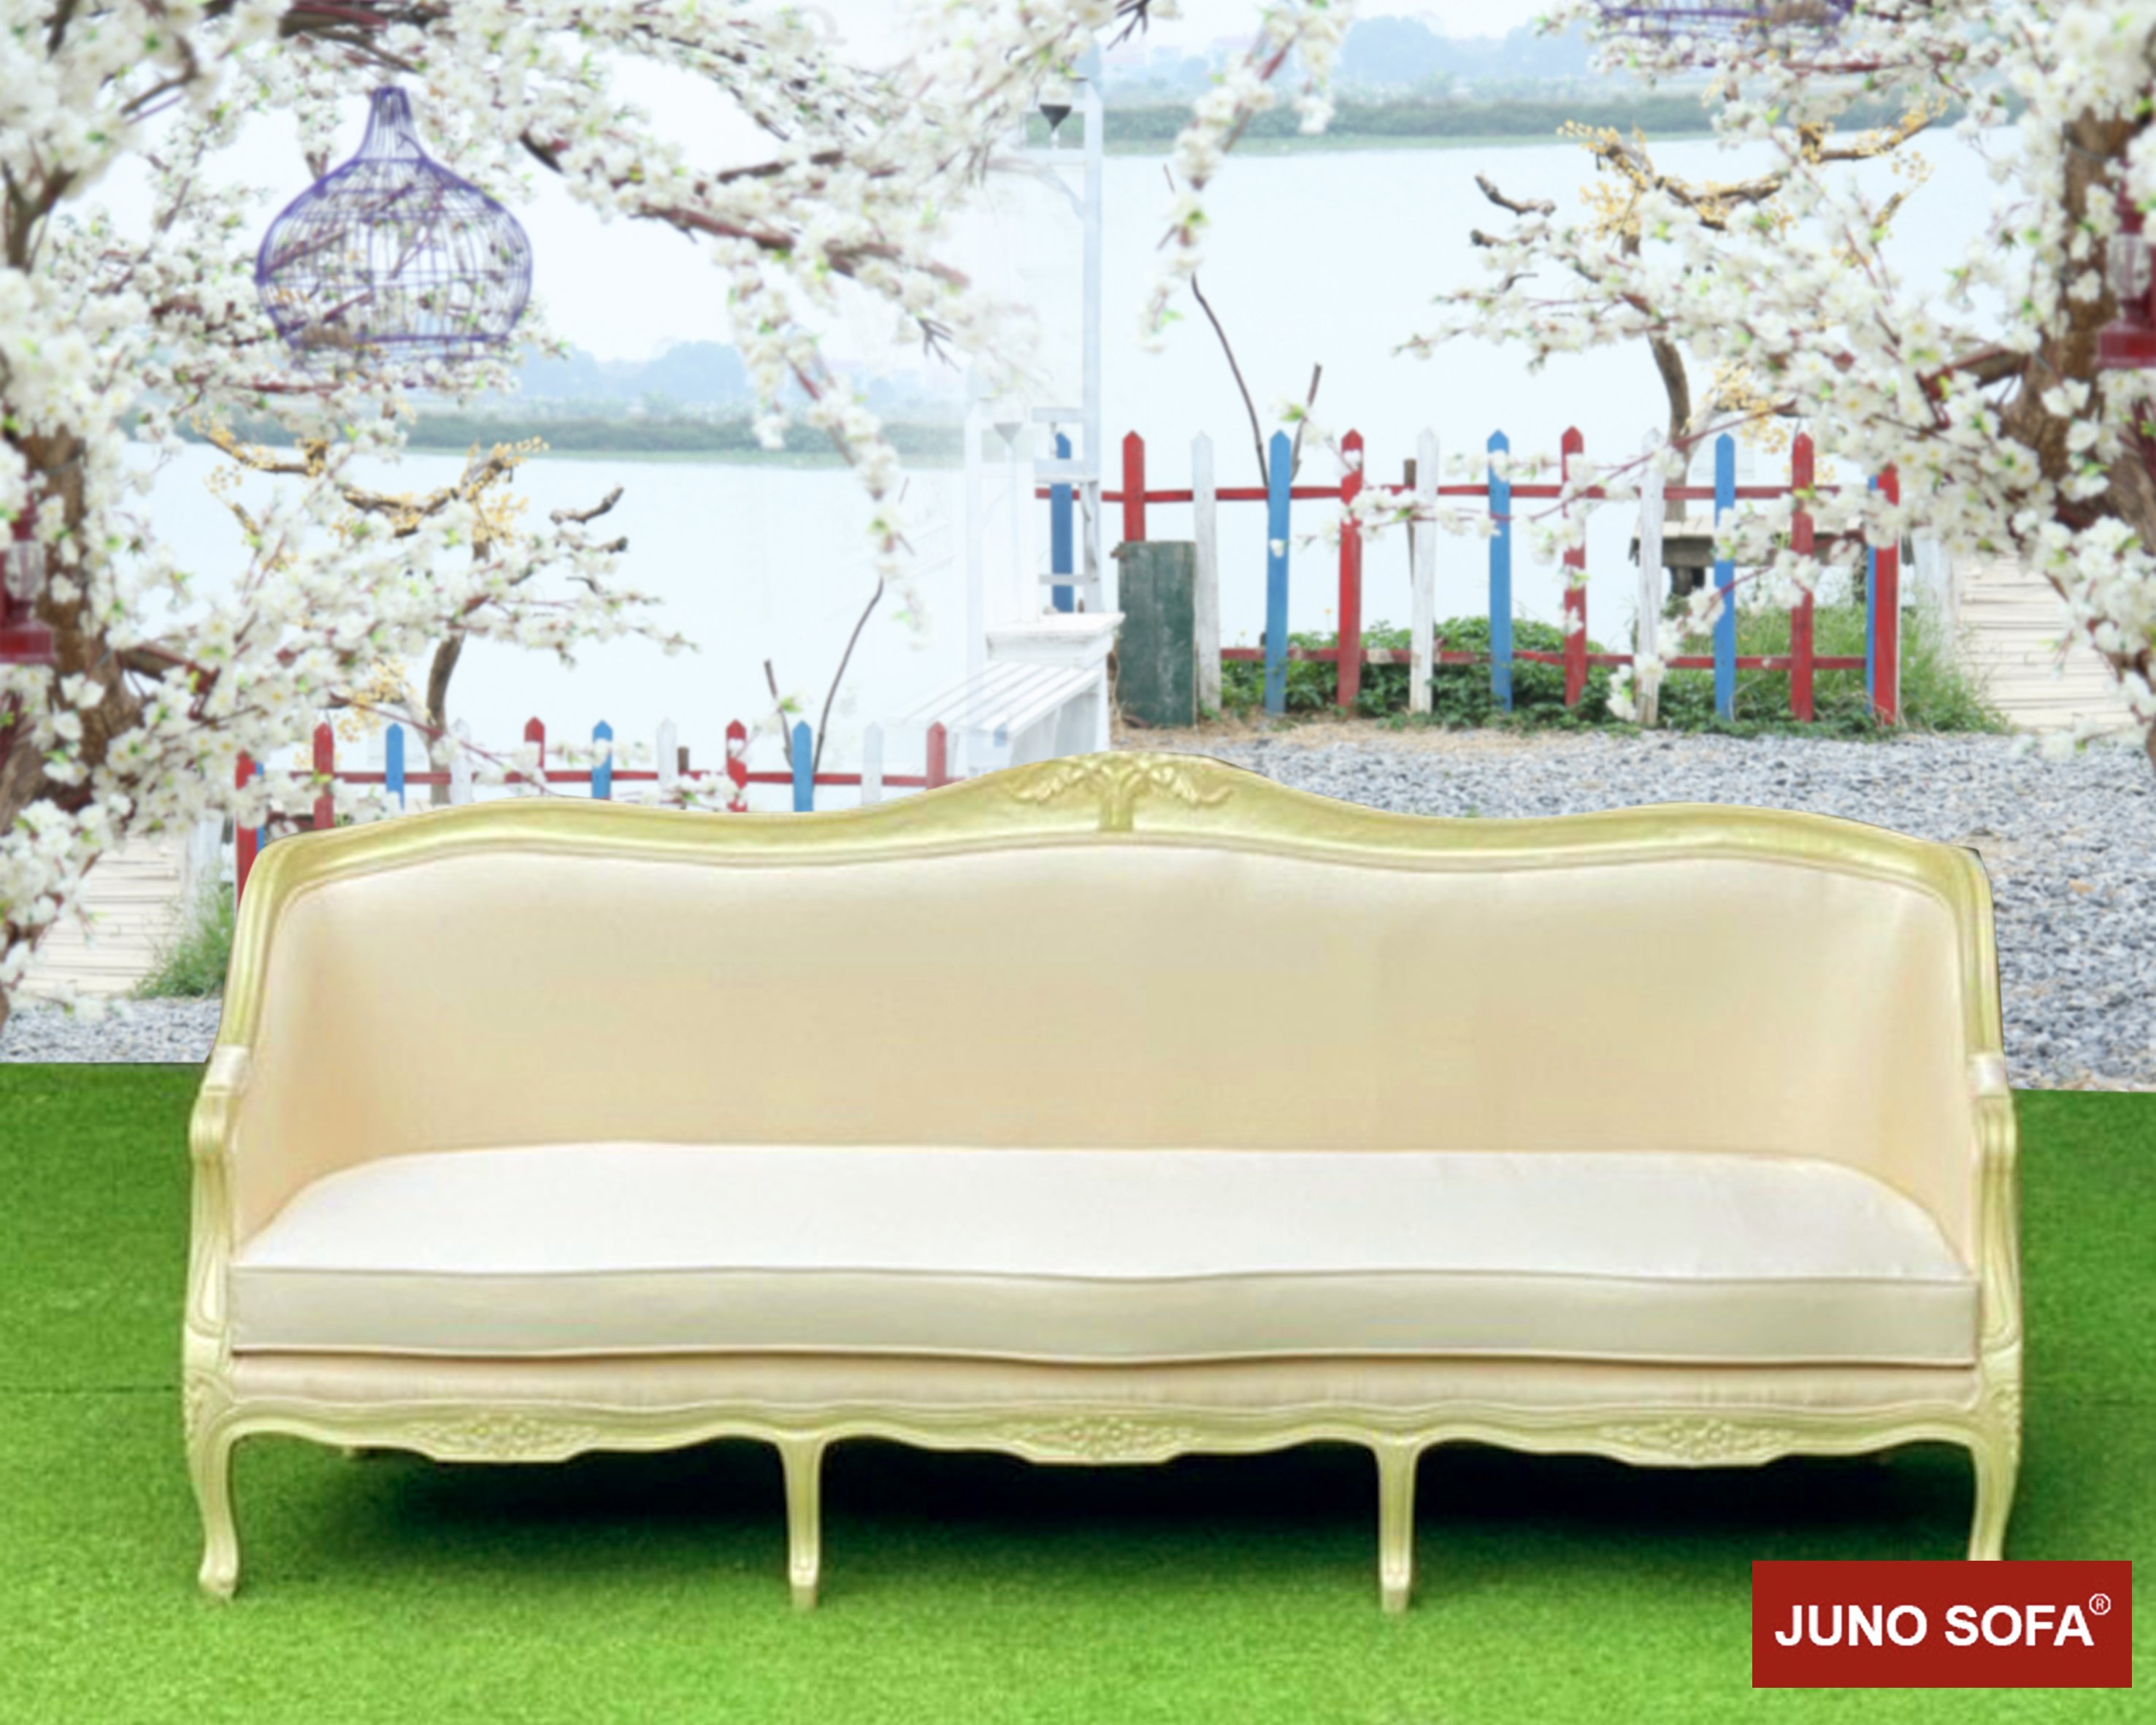 Bộ Sofa Đông Dương Cao Cấp Juno Sofa băng và 2 đơn